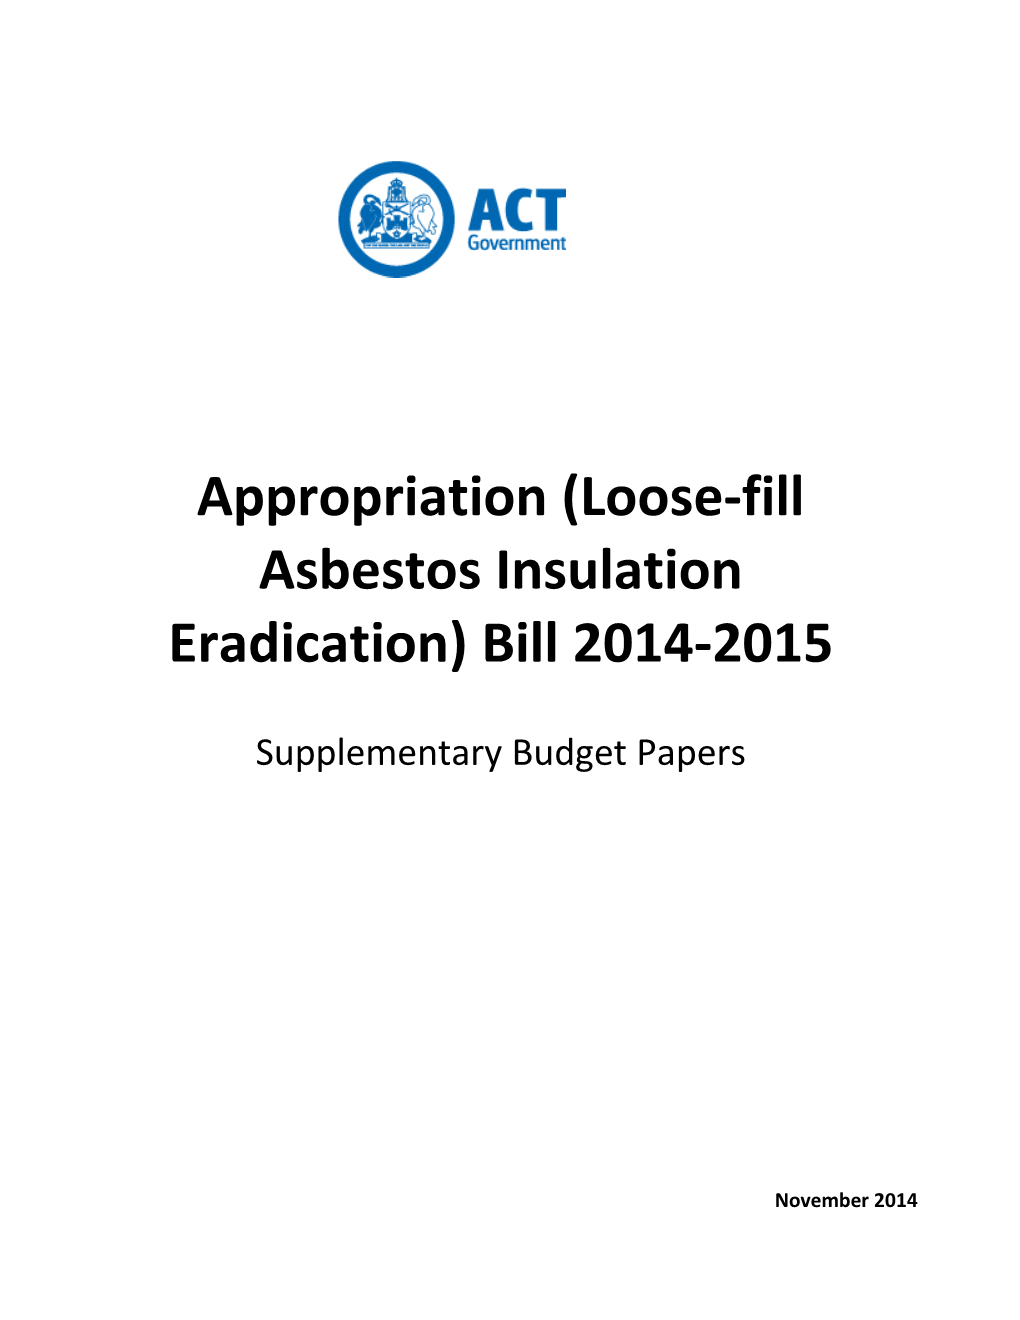 Appropriation (Loose-Fill Asbestos Insulation Eradication) Bill 2014-2015